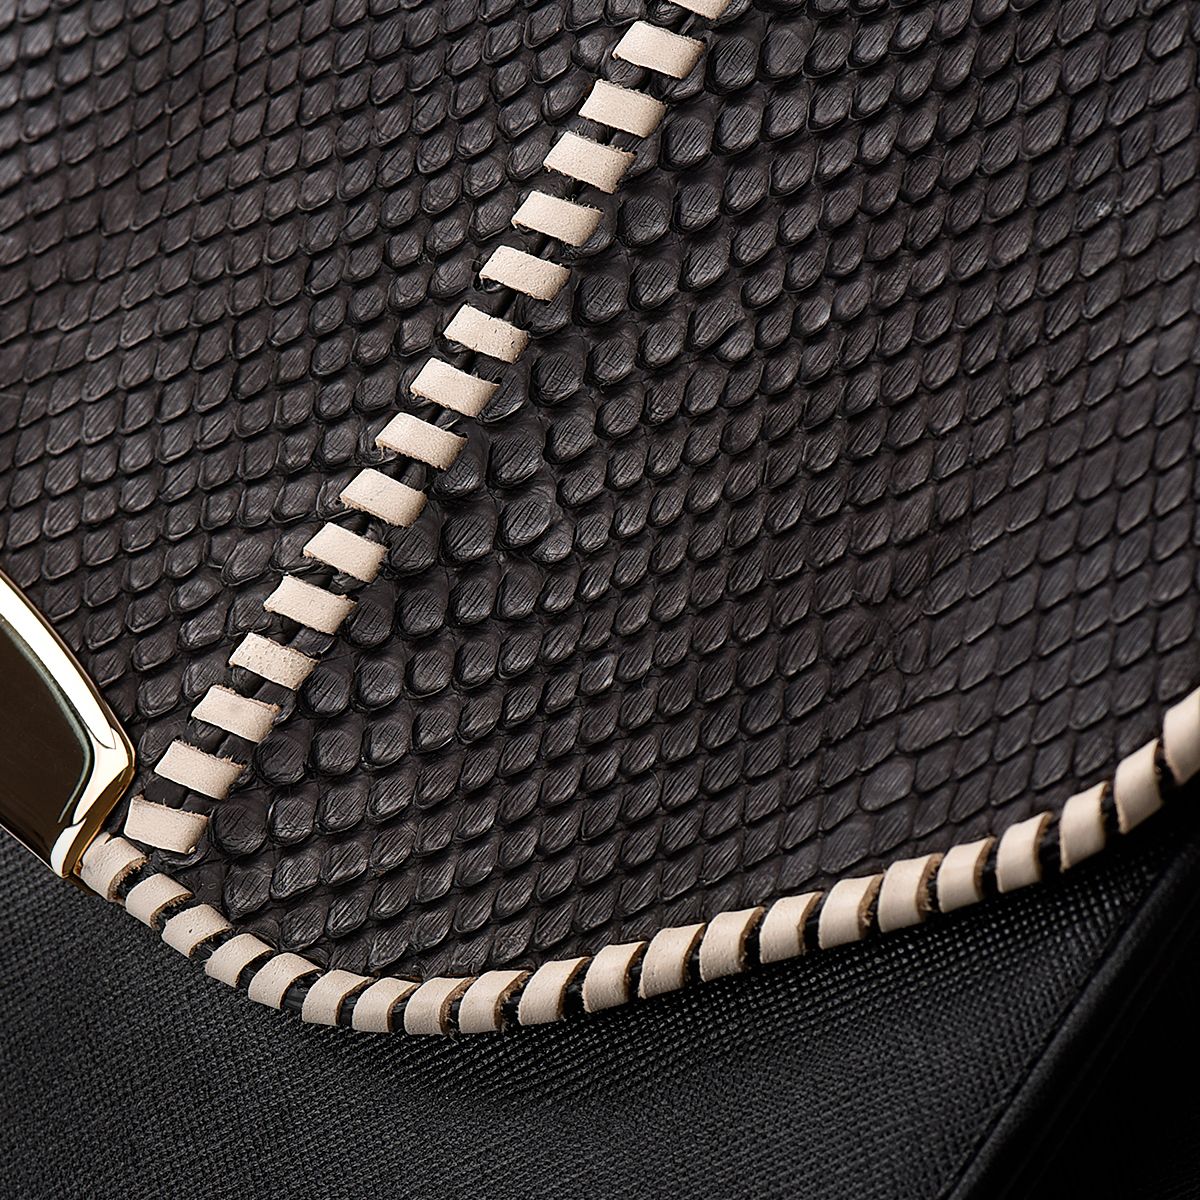 BOD86PI - Cuadra black western fashion python bag for women